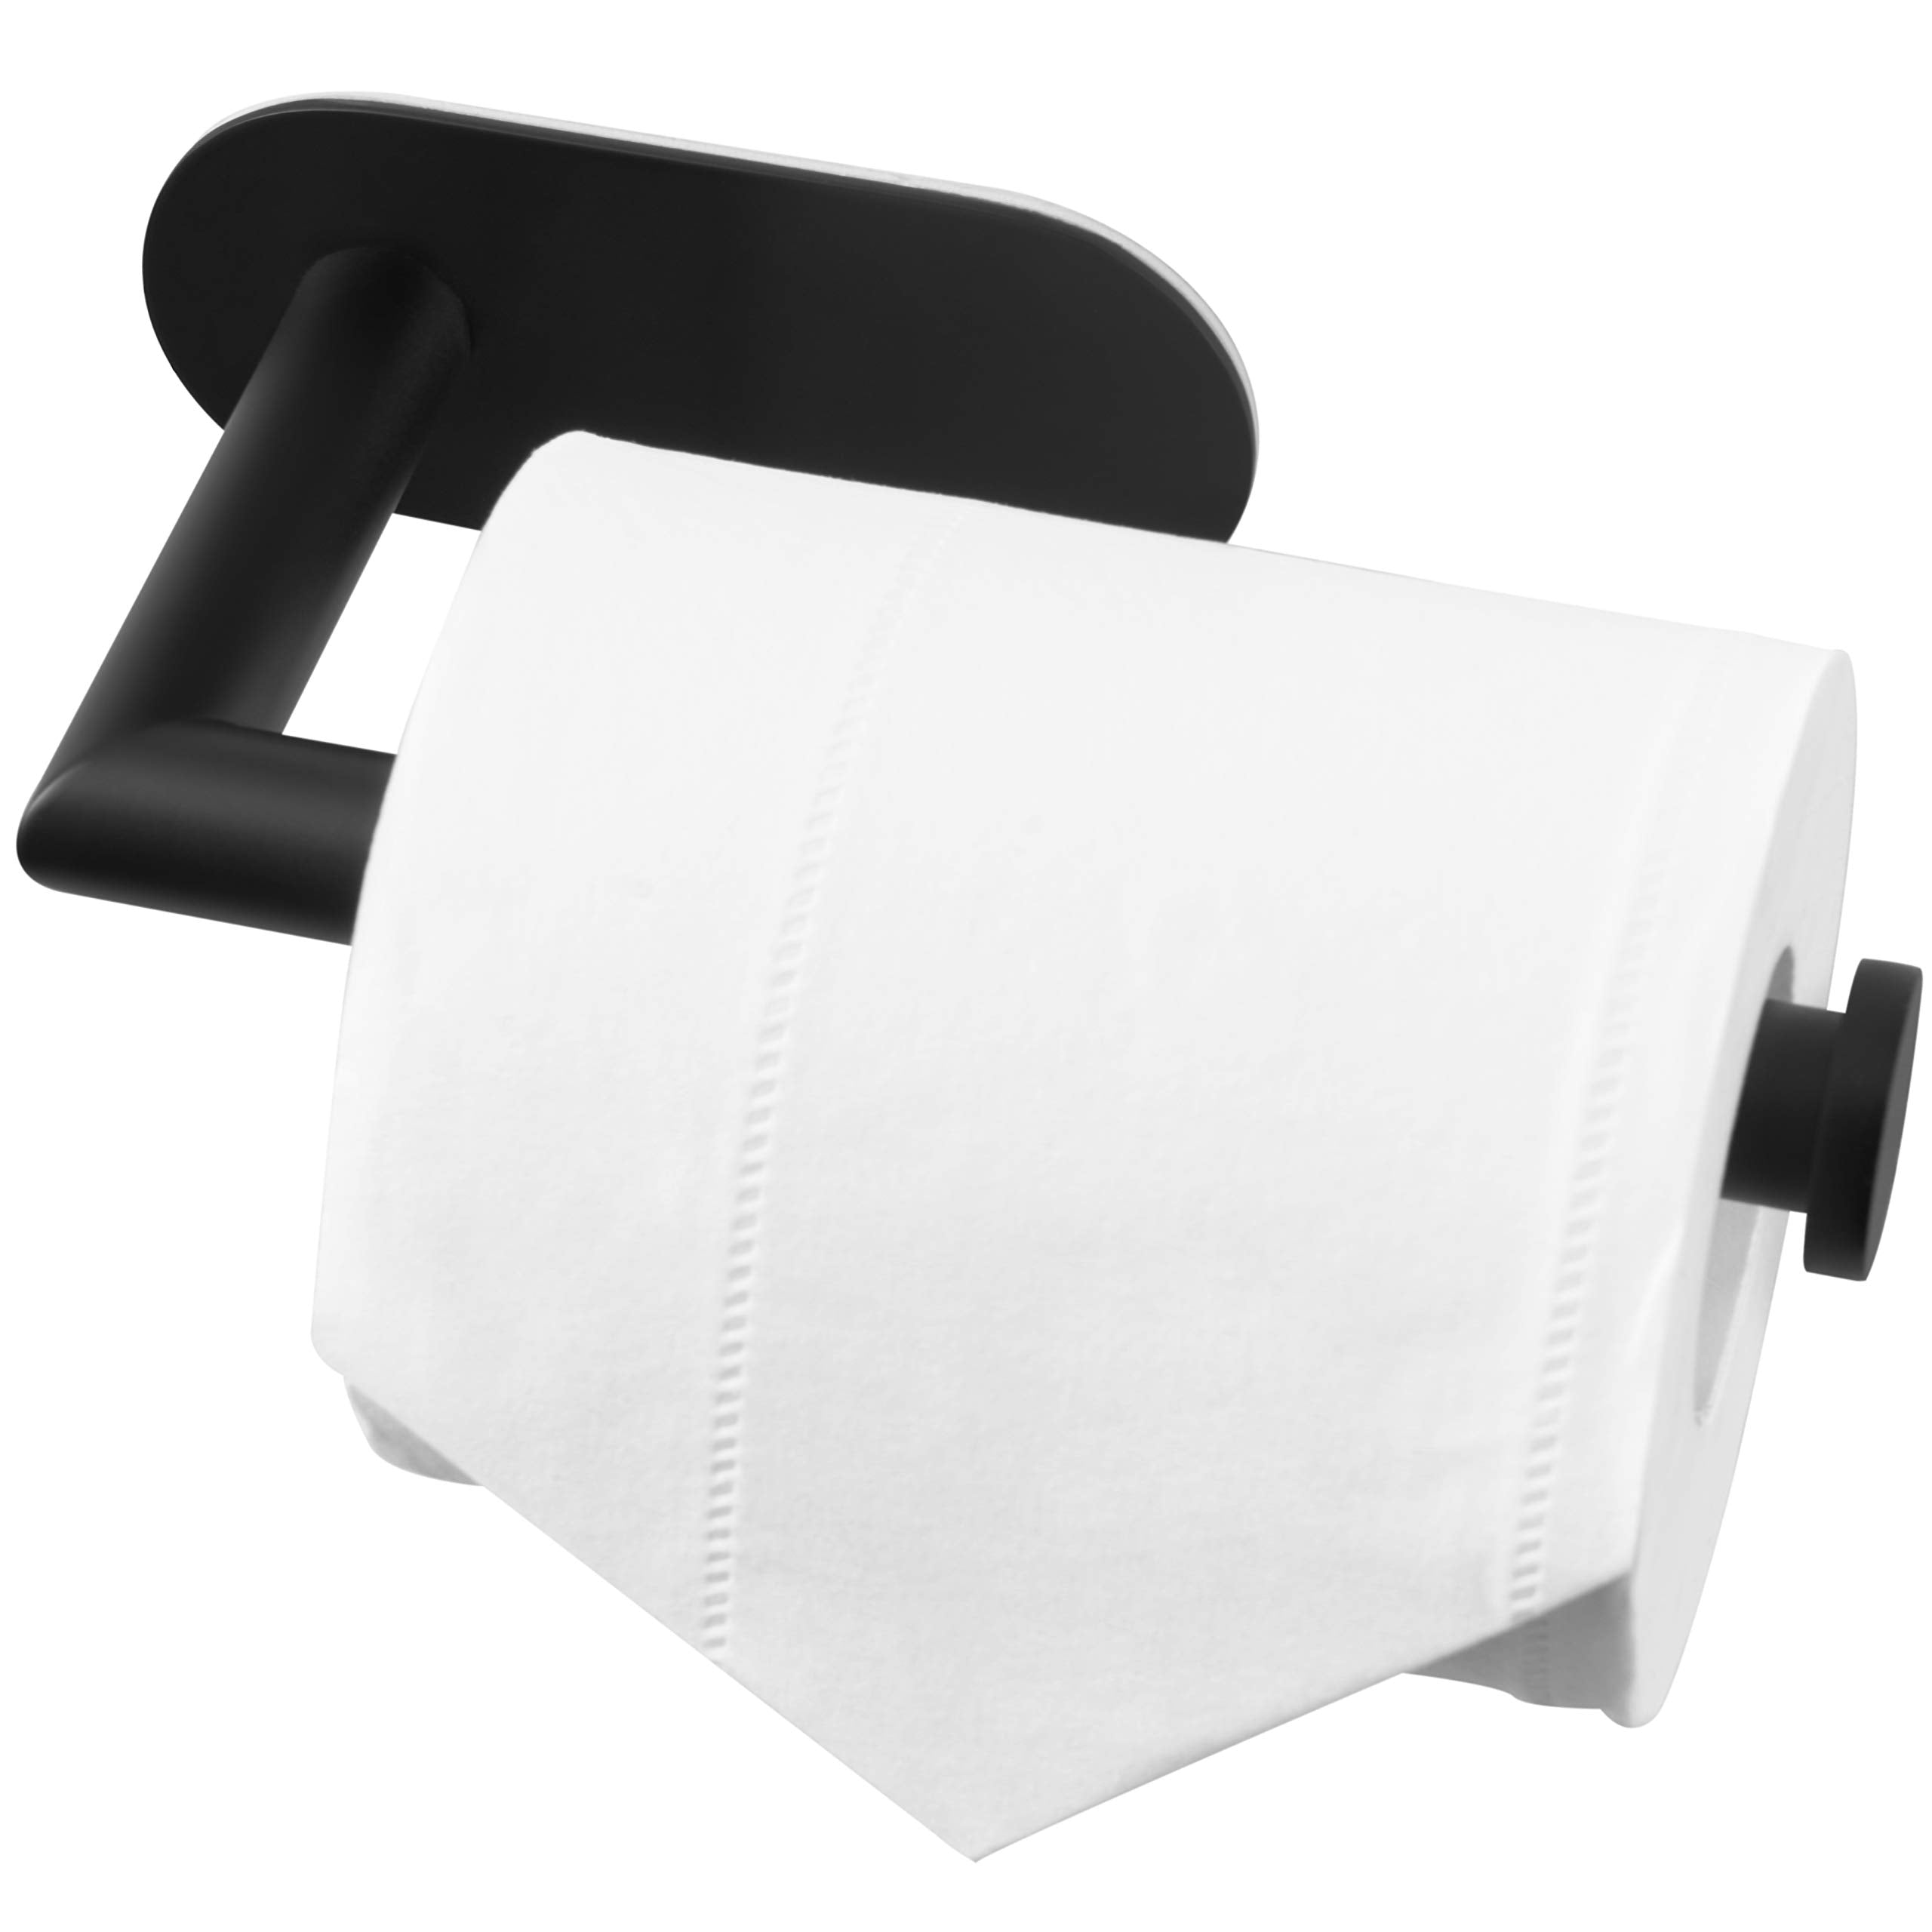 HITSLAM Toilet Paper Holder Wall Mount,Chrome Toilet Paper Roll Holder for  Bathroom